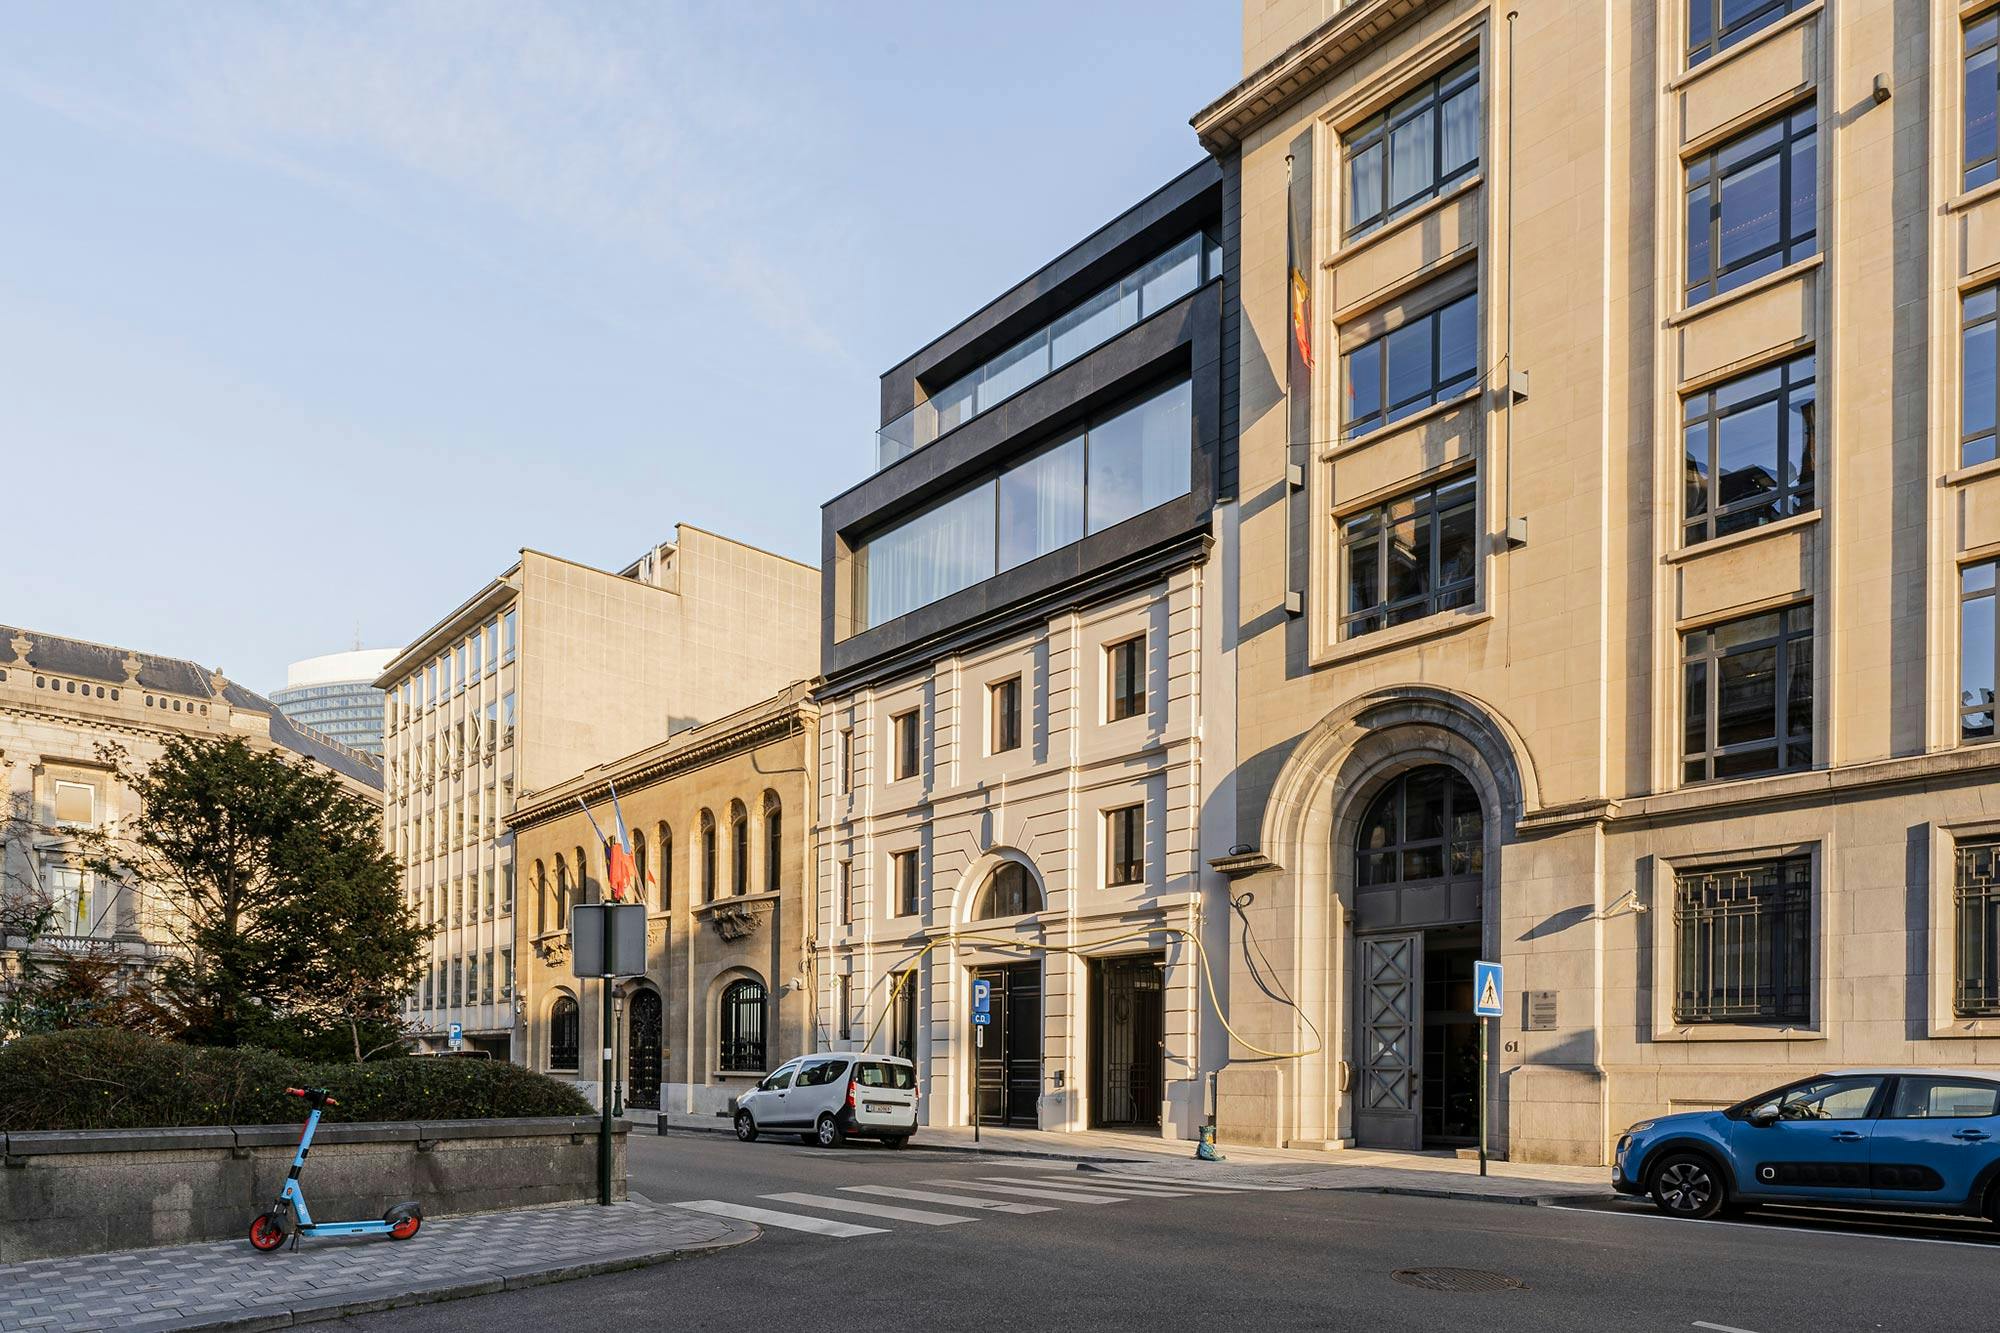 Numéro d'image 34 de la section actuelle de Réflexions en Dekton: la rénovation du bâtiment classique « The Duke » de Bruxelles de Cosentino Canada